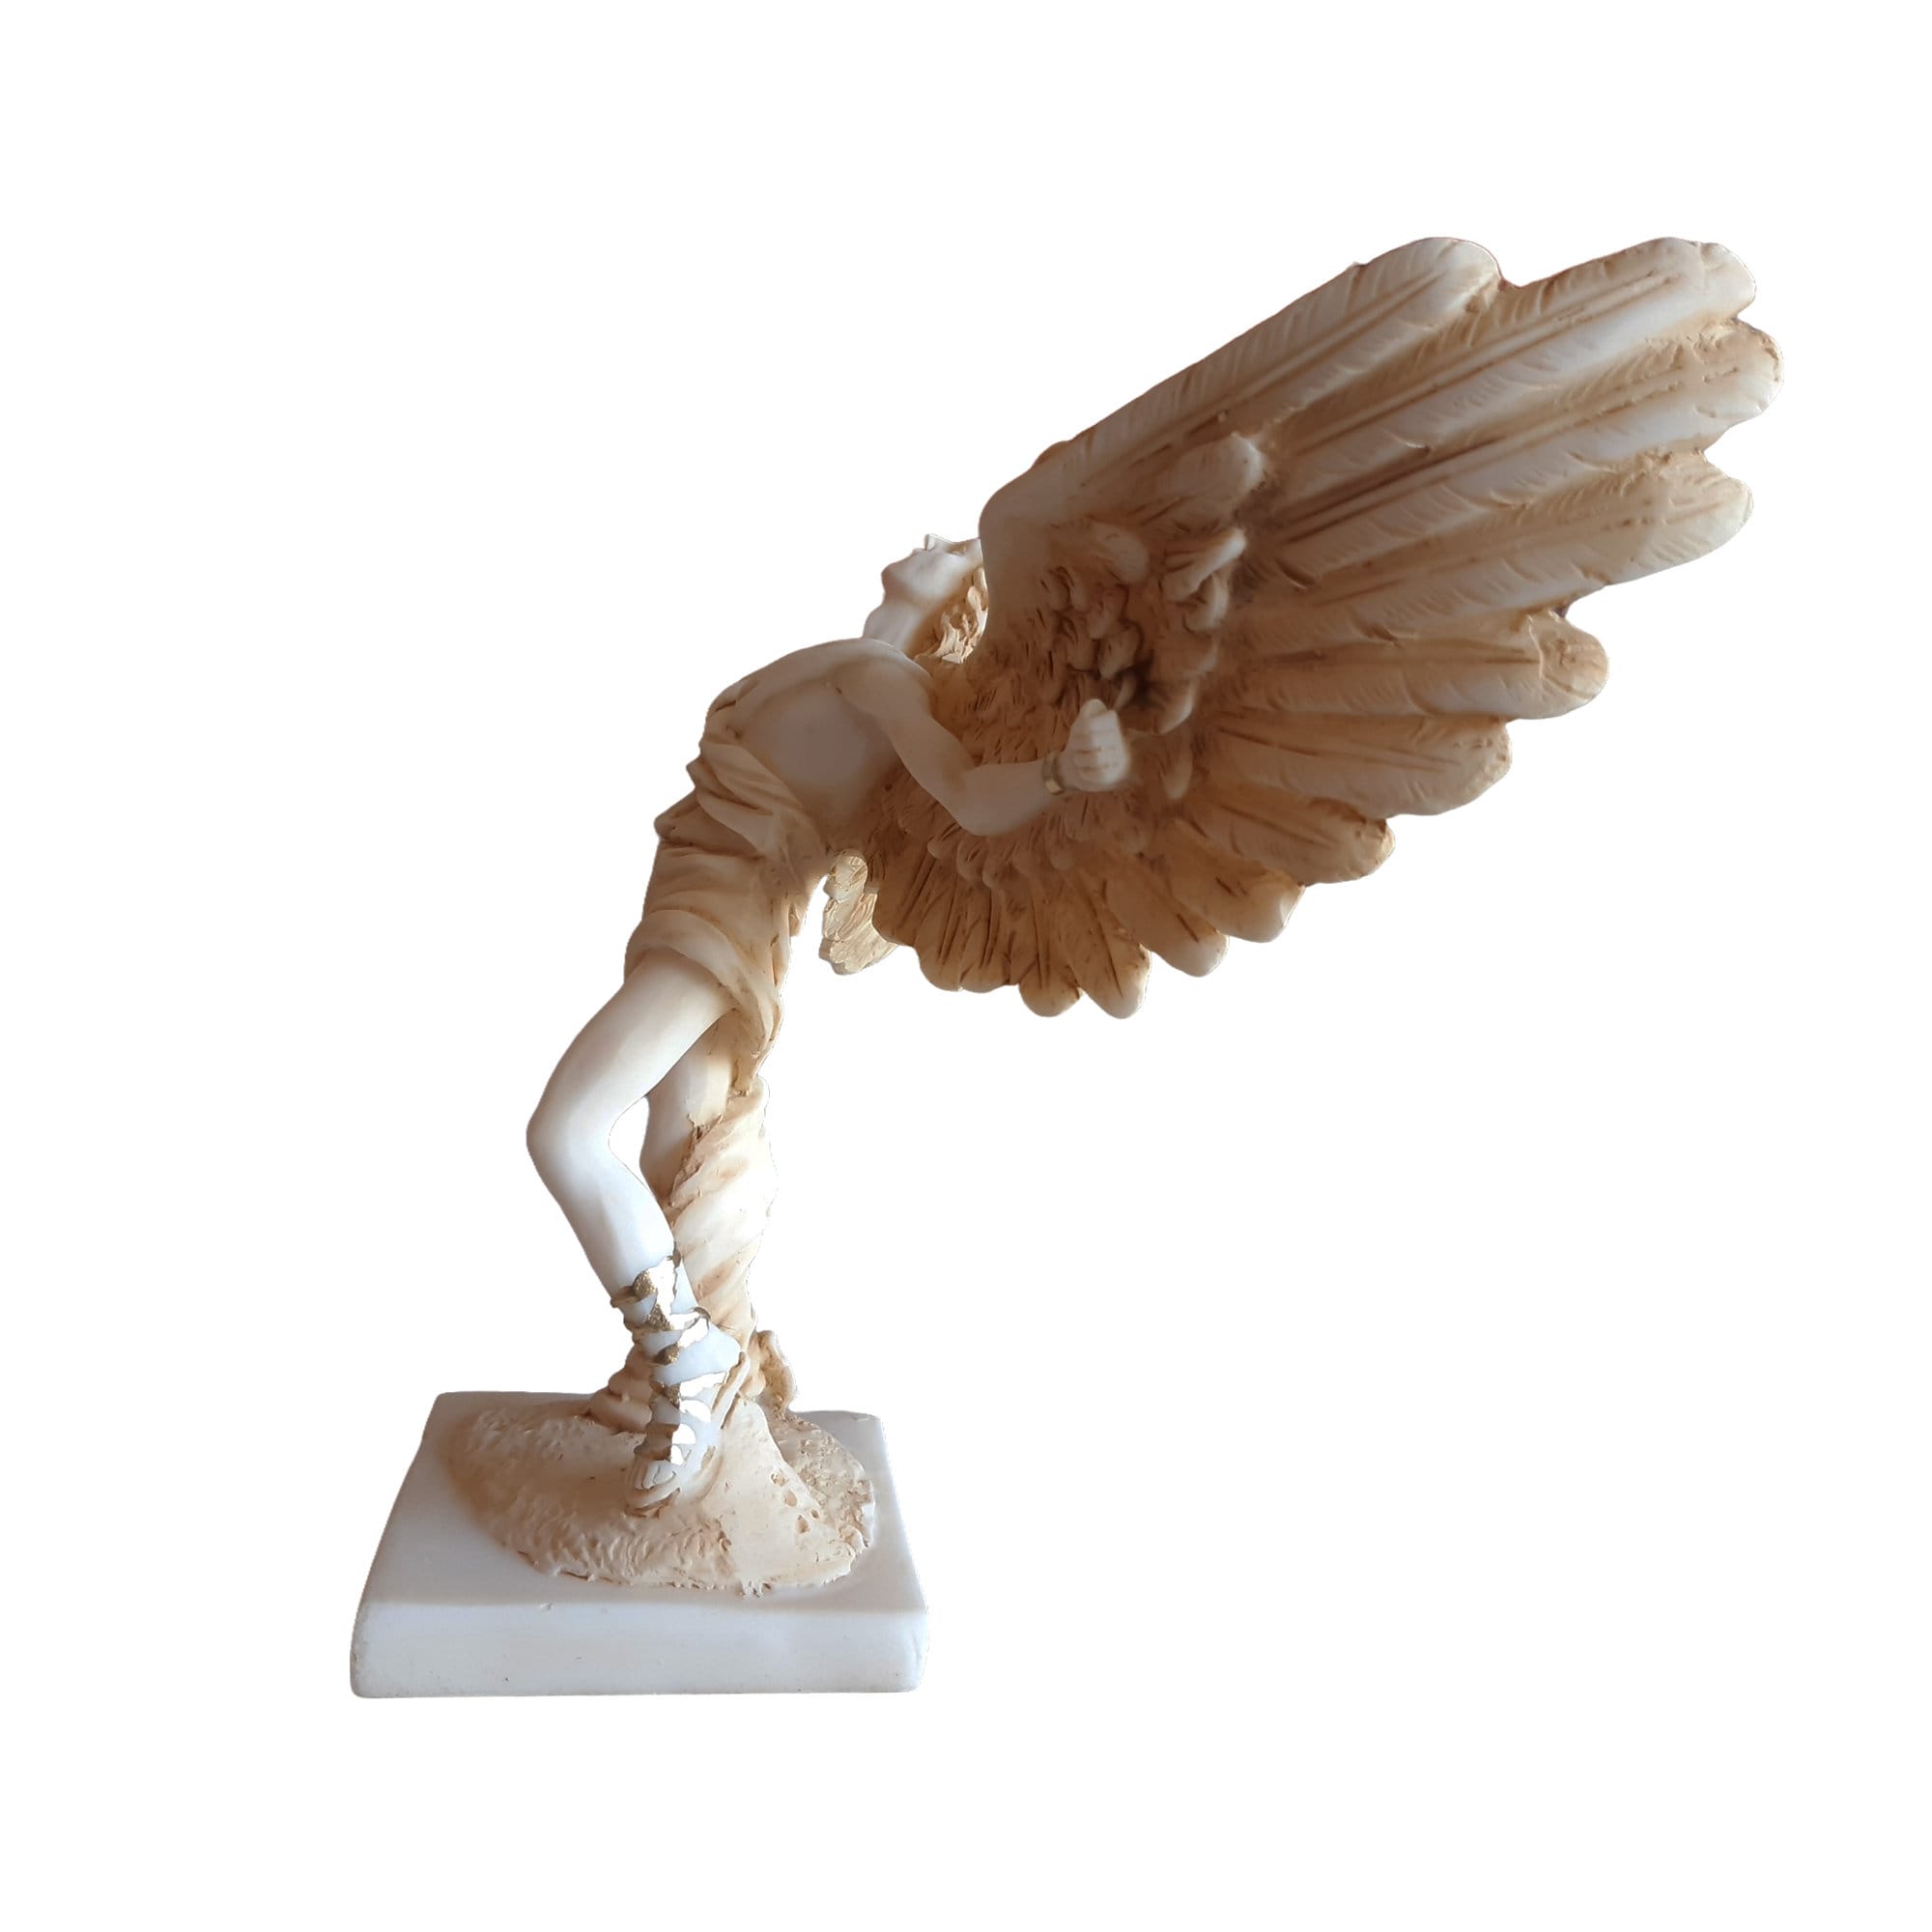 Icarus Greek Mythology Cast Alabaster Statue Sculpture 15 cm